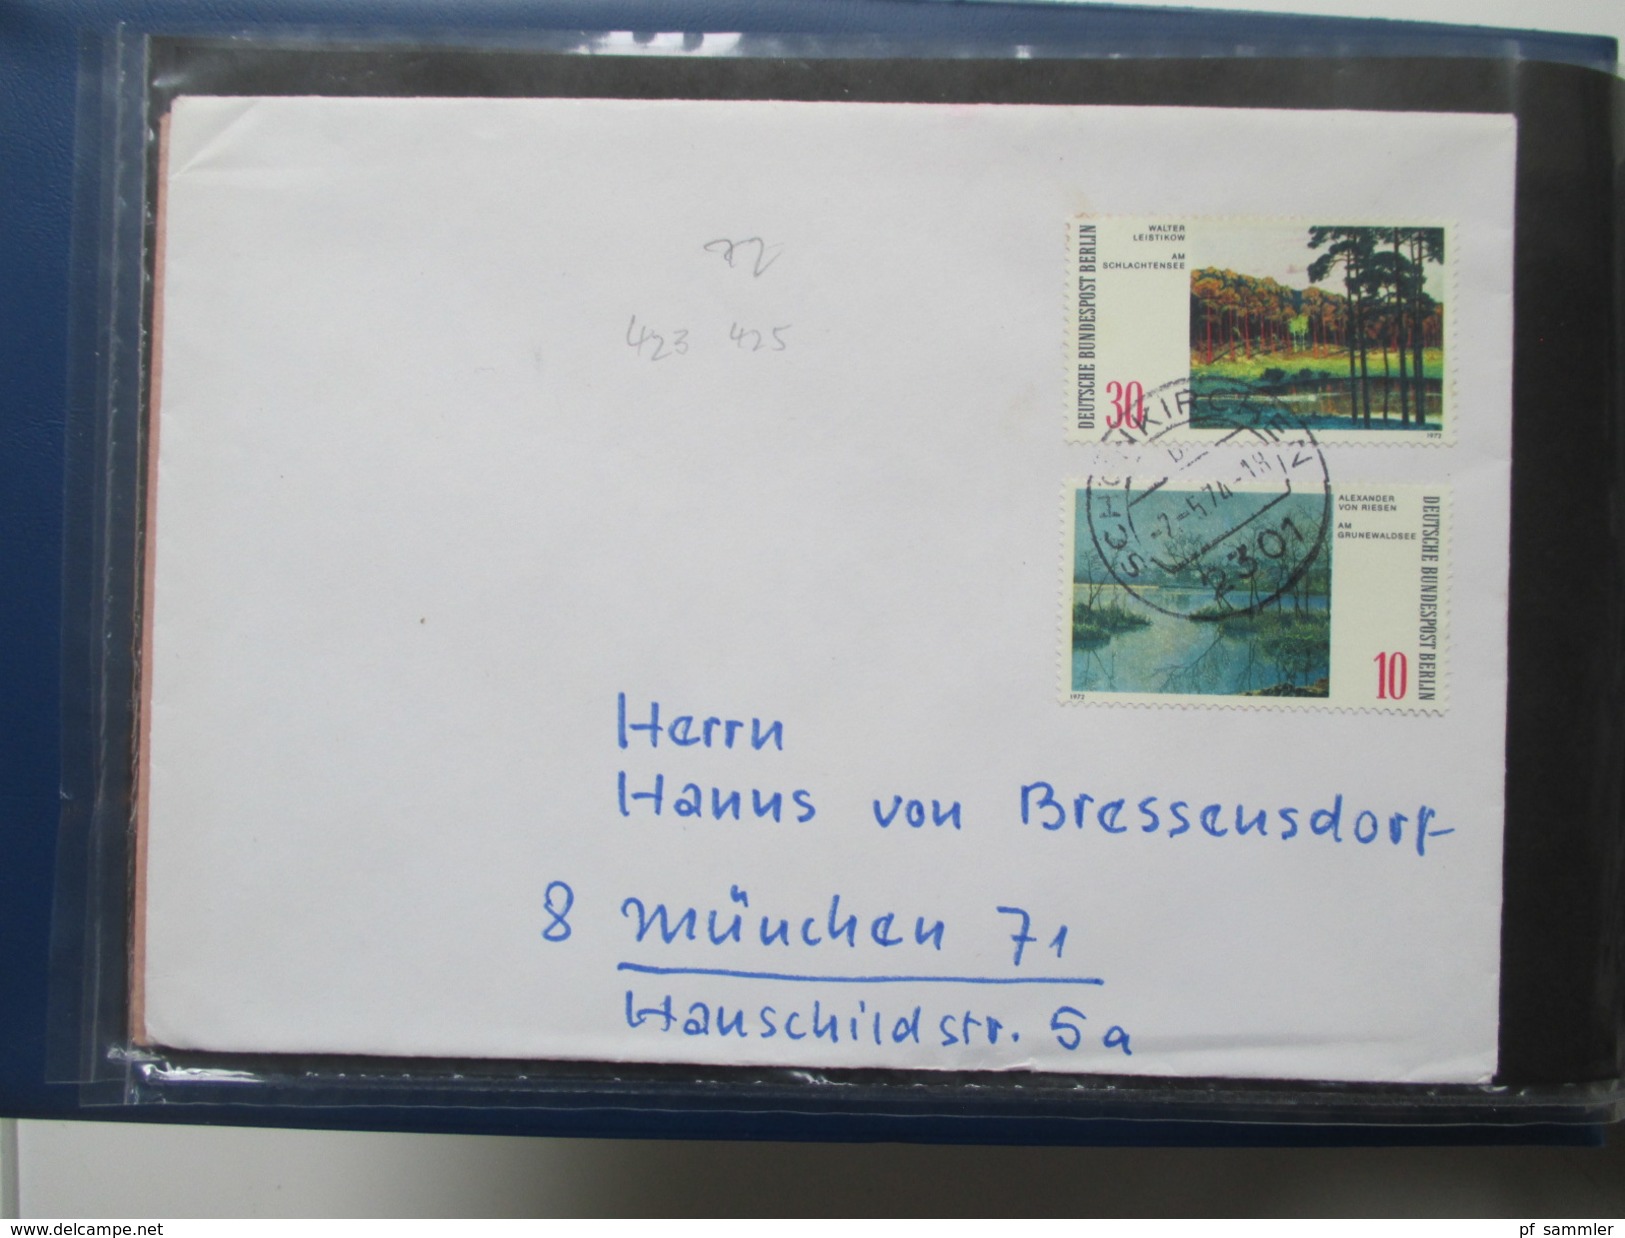 Berlin Belegesammlung 100 Briefe.Bedarf / FDC 1972-1975. Interessante Stücke / Stöberposten! Bund / Berlin Stempel. ATM - Sammlungen (im Alben)